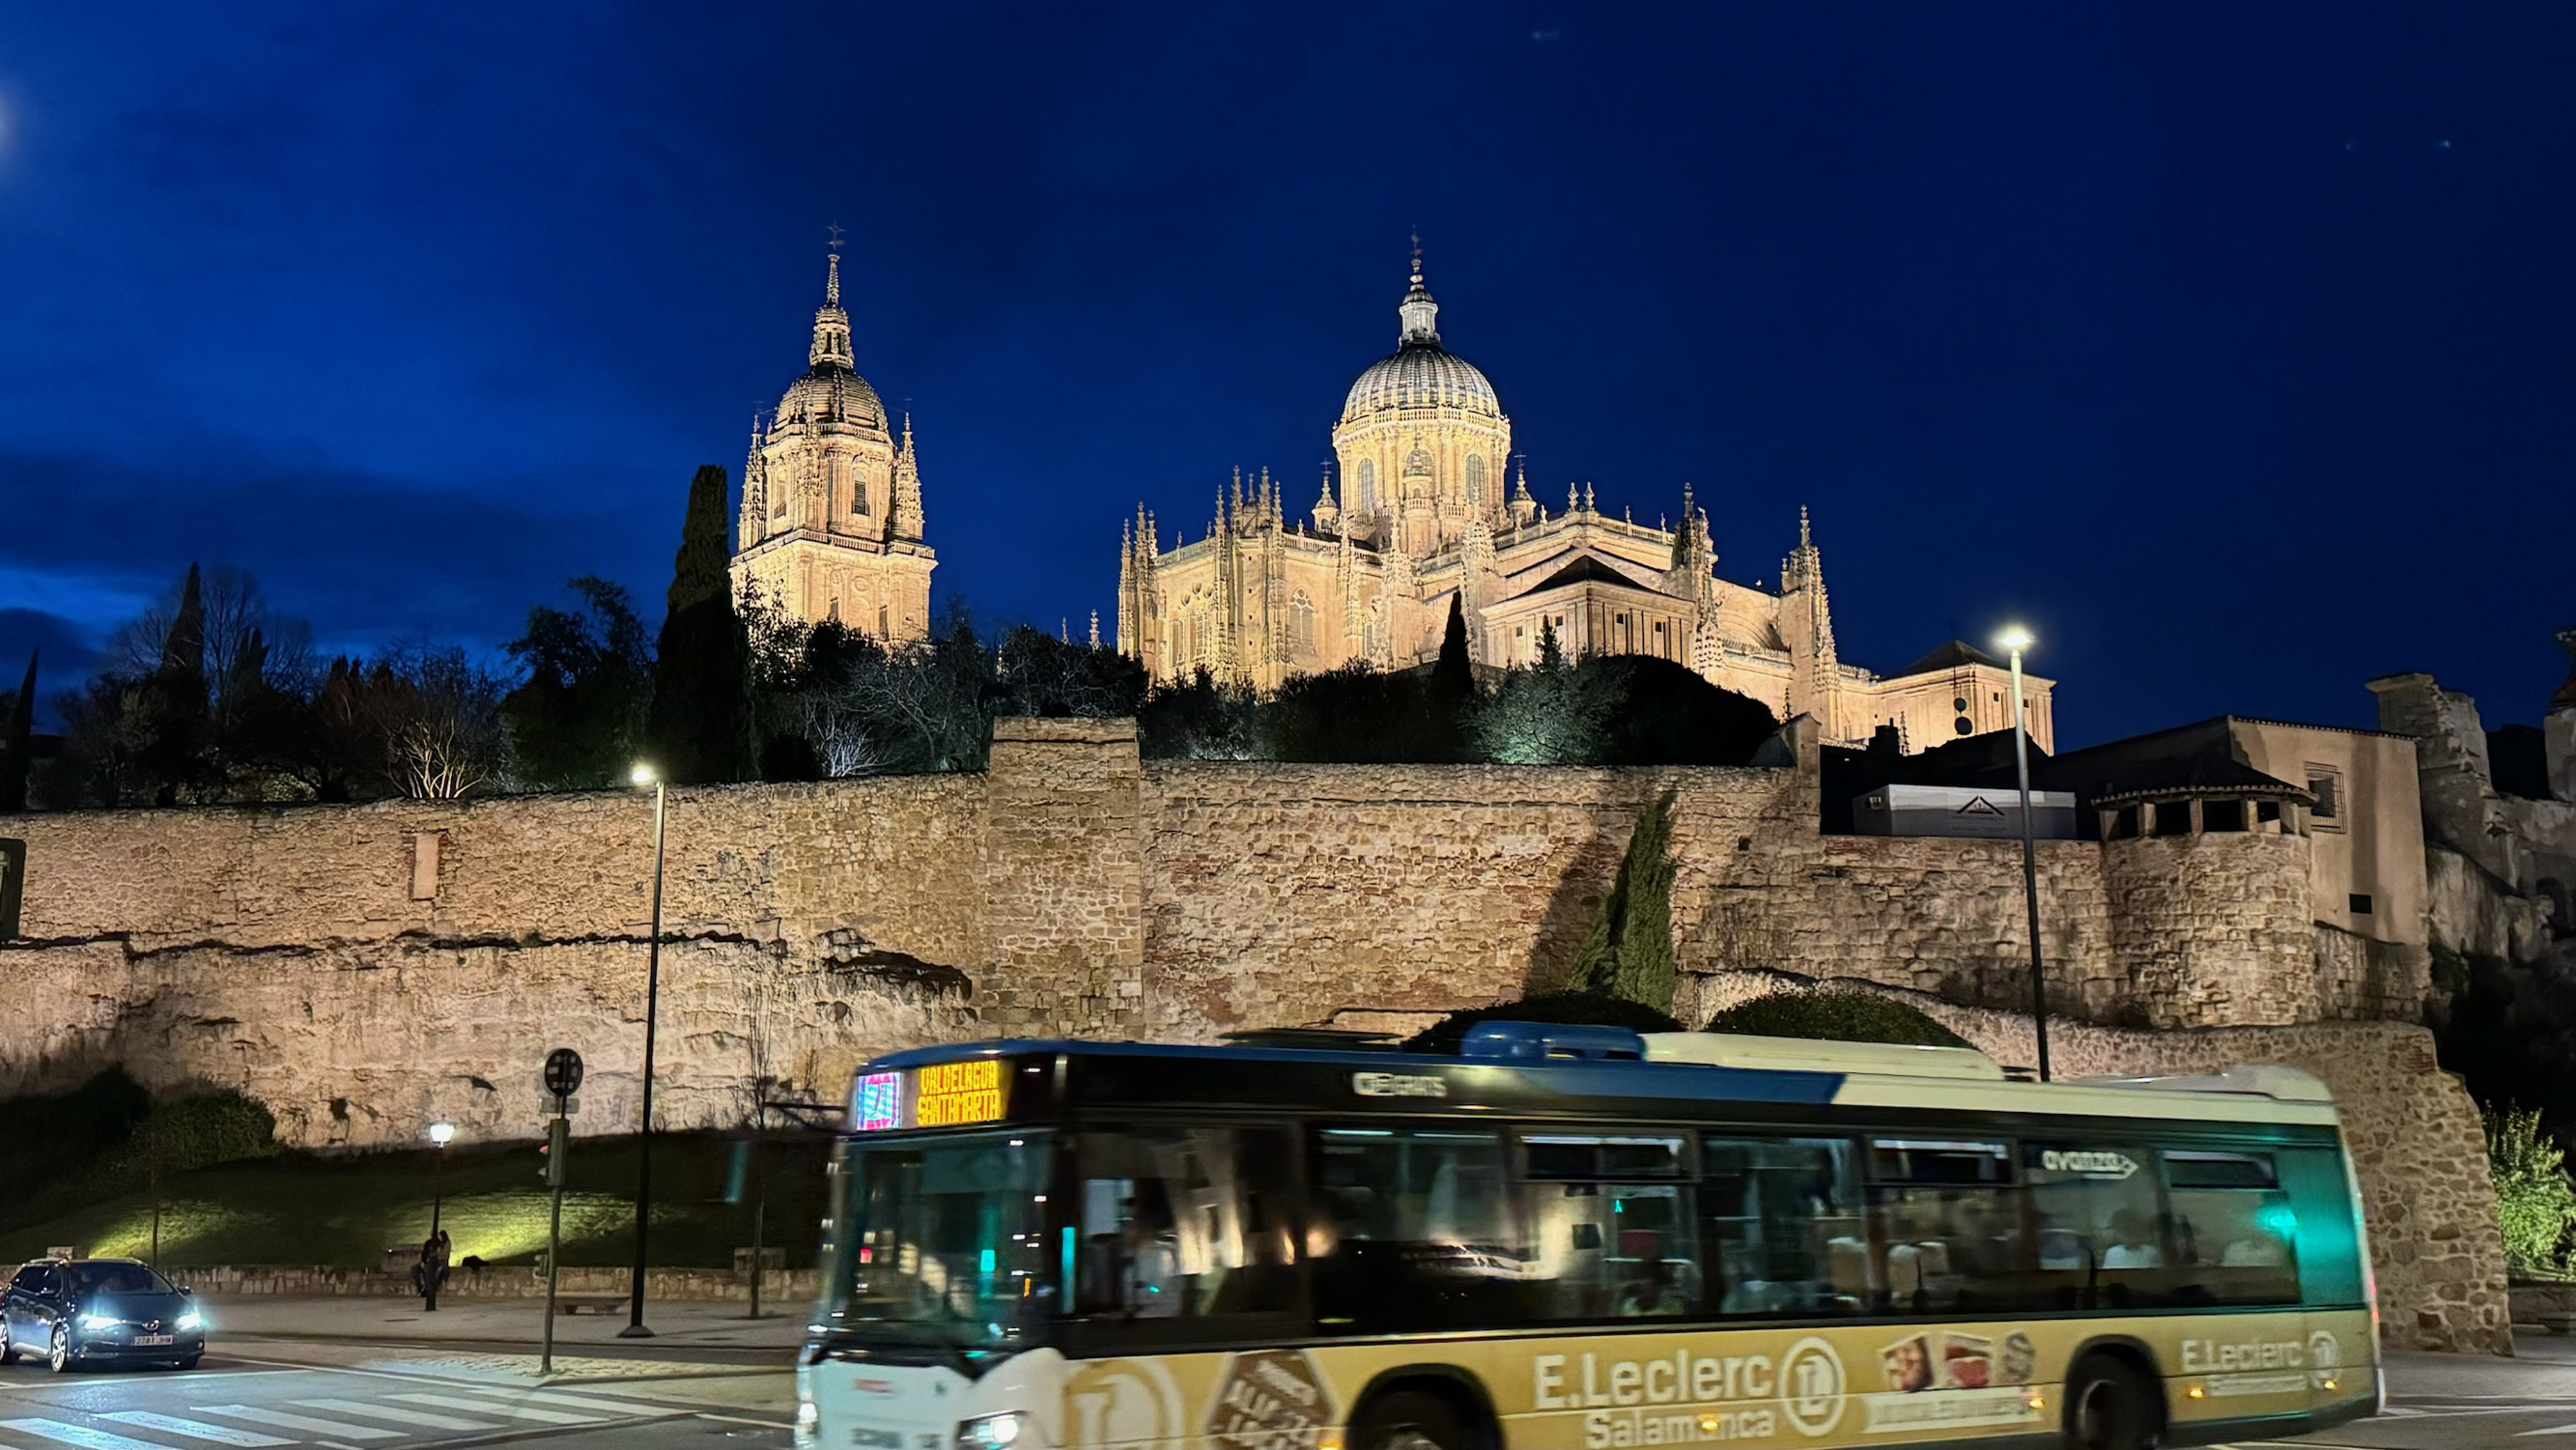 来西班牙怎么能不来黄金之城萨拉曼卡Salamanca逛逛呢